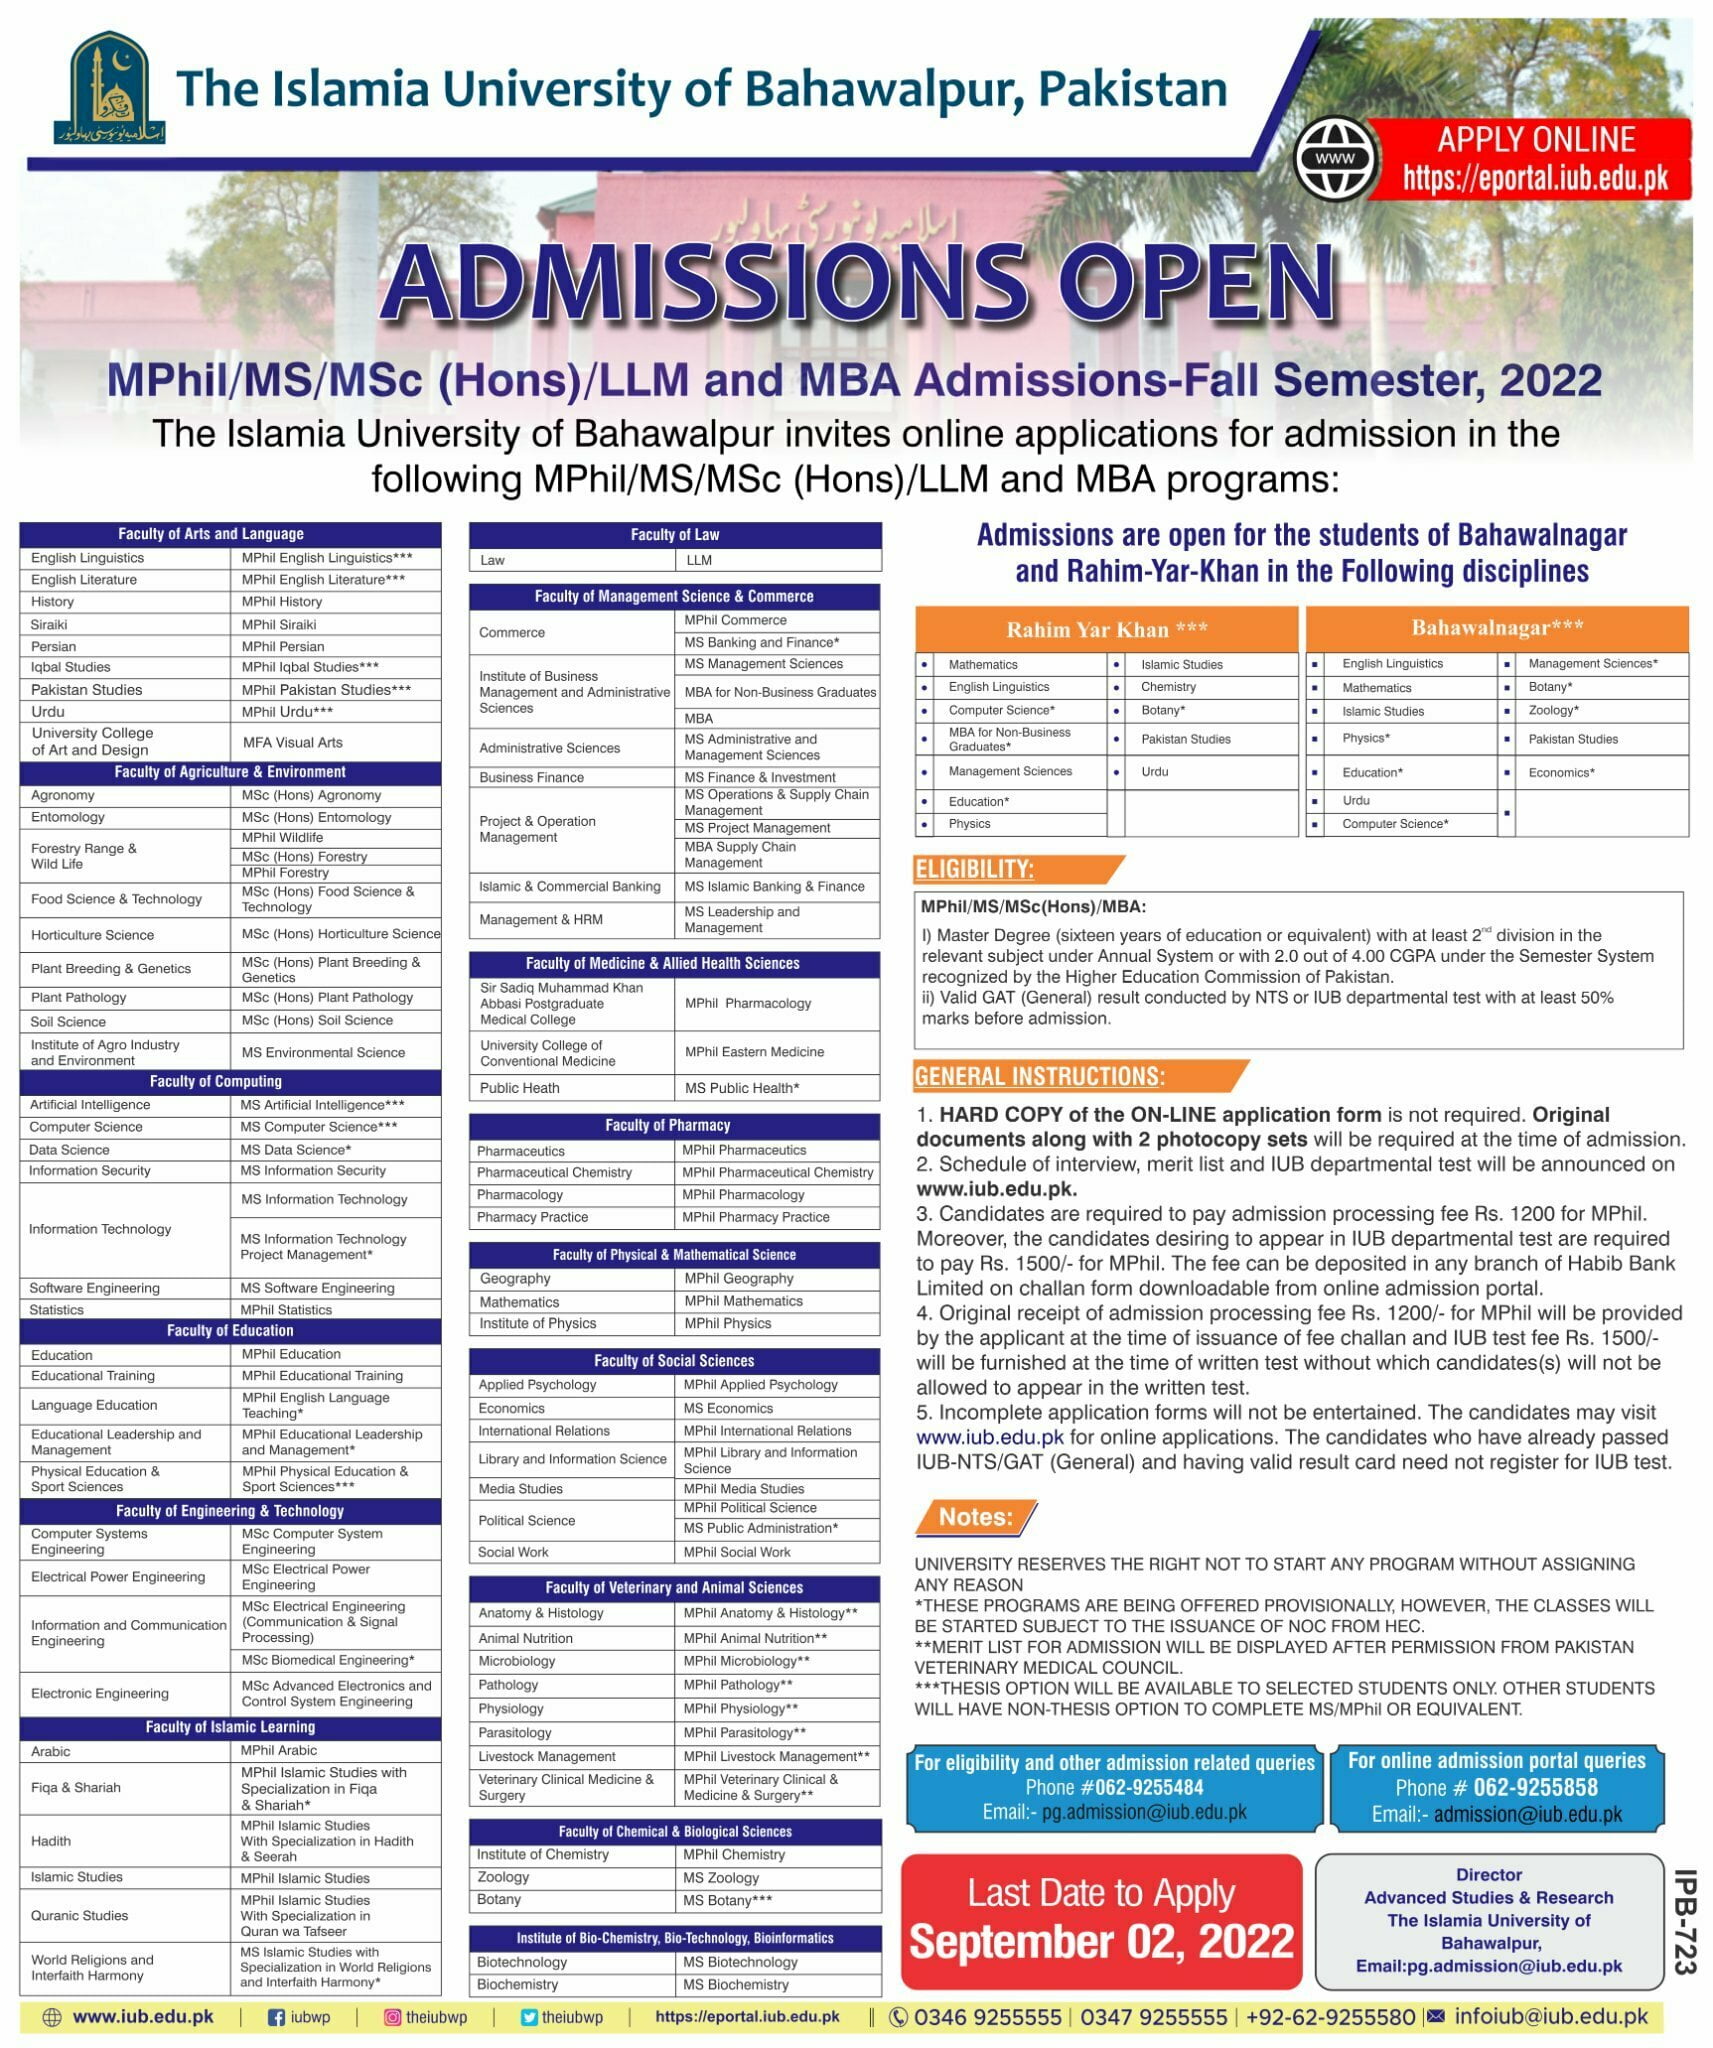 IUB MPhill/MS/Msc(hons)MBA & PhD Programs Admission Fall 2022